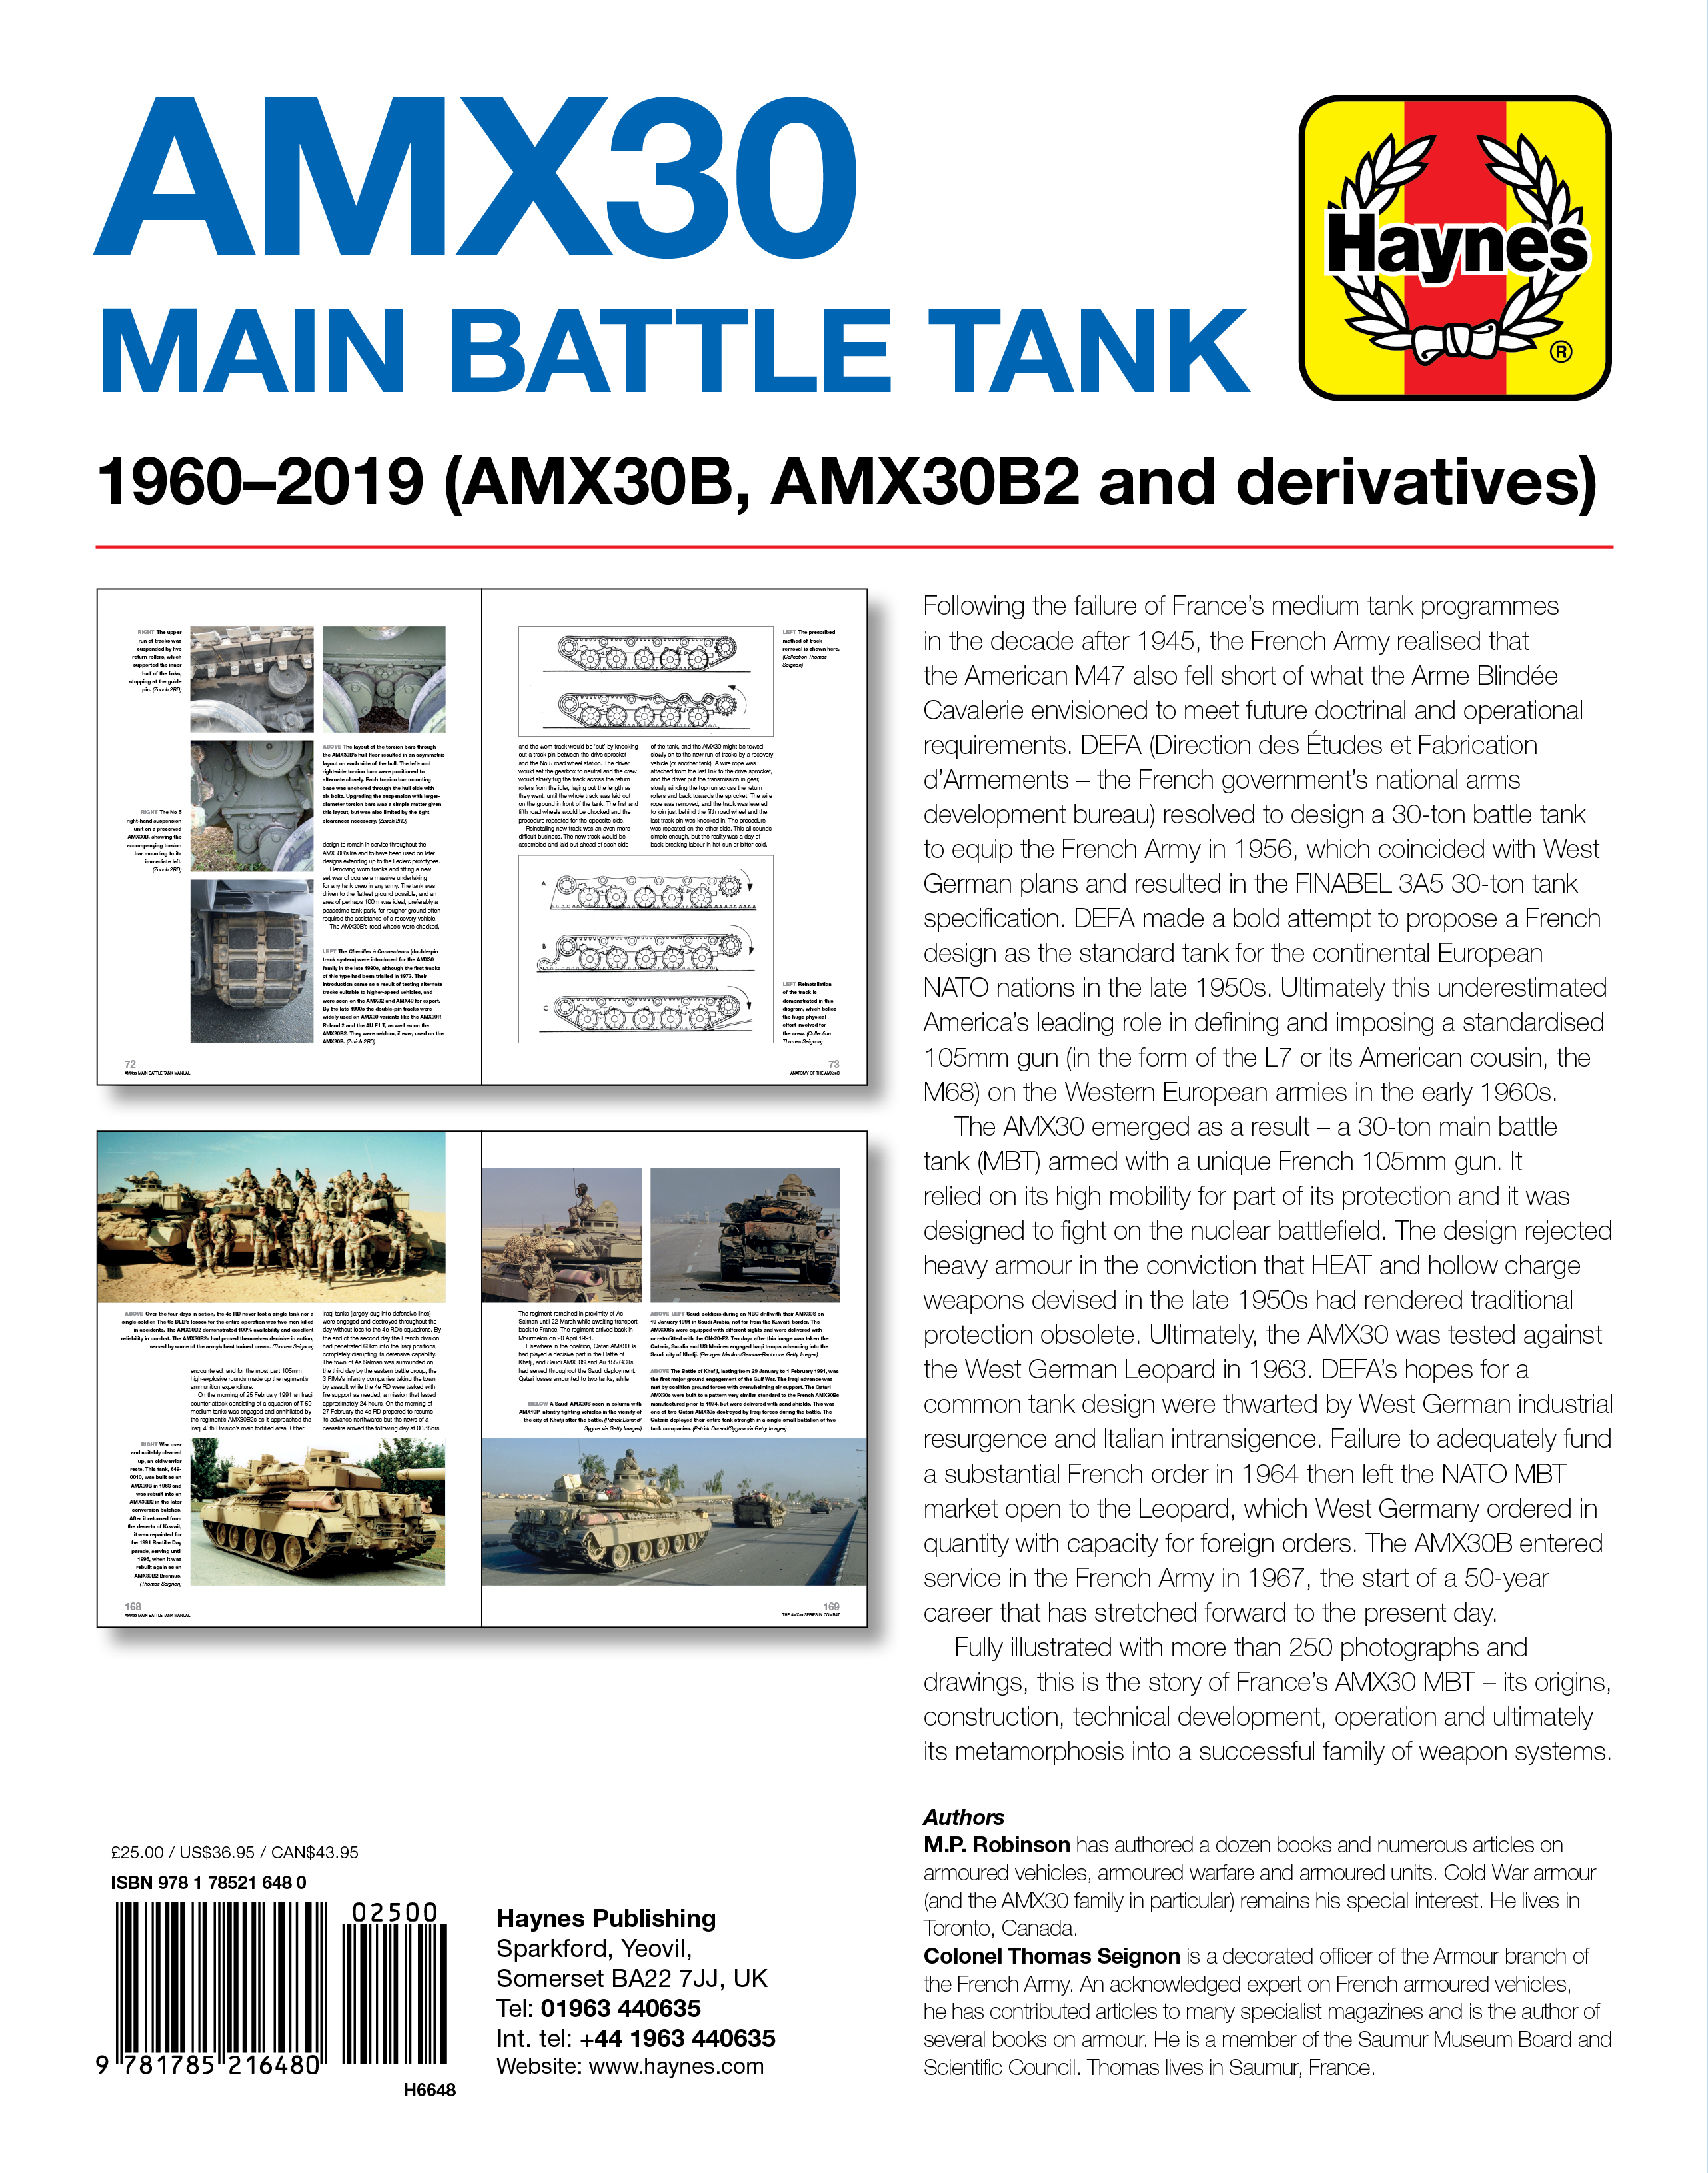 Haynes tanque de batalla principal AMX30 manual del los entusiastas fresnch guerra fría Libro Nuevo 